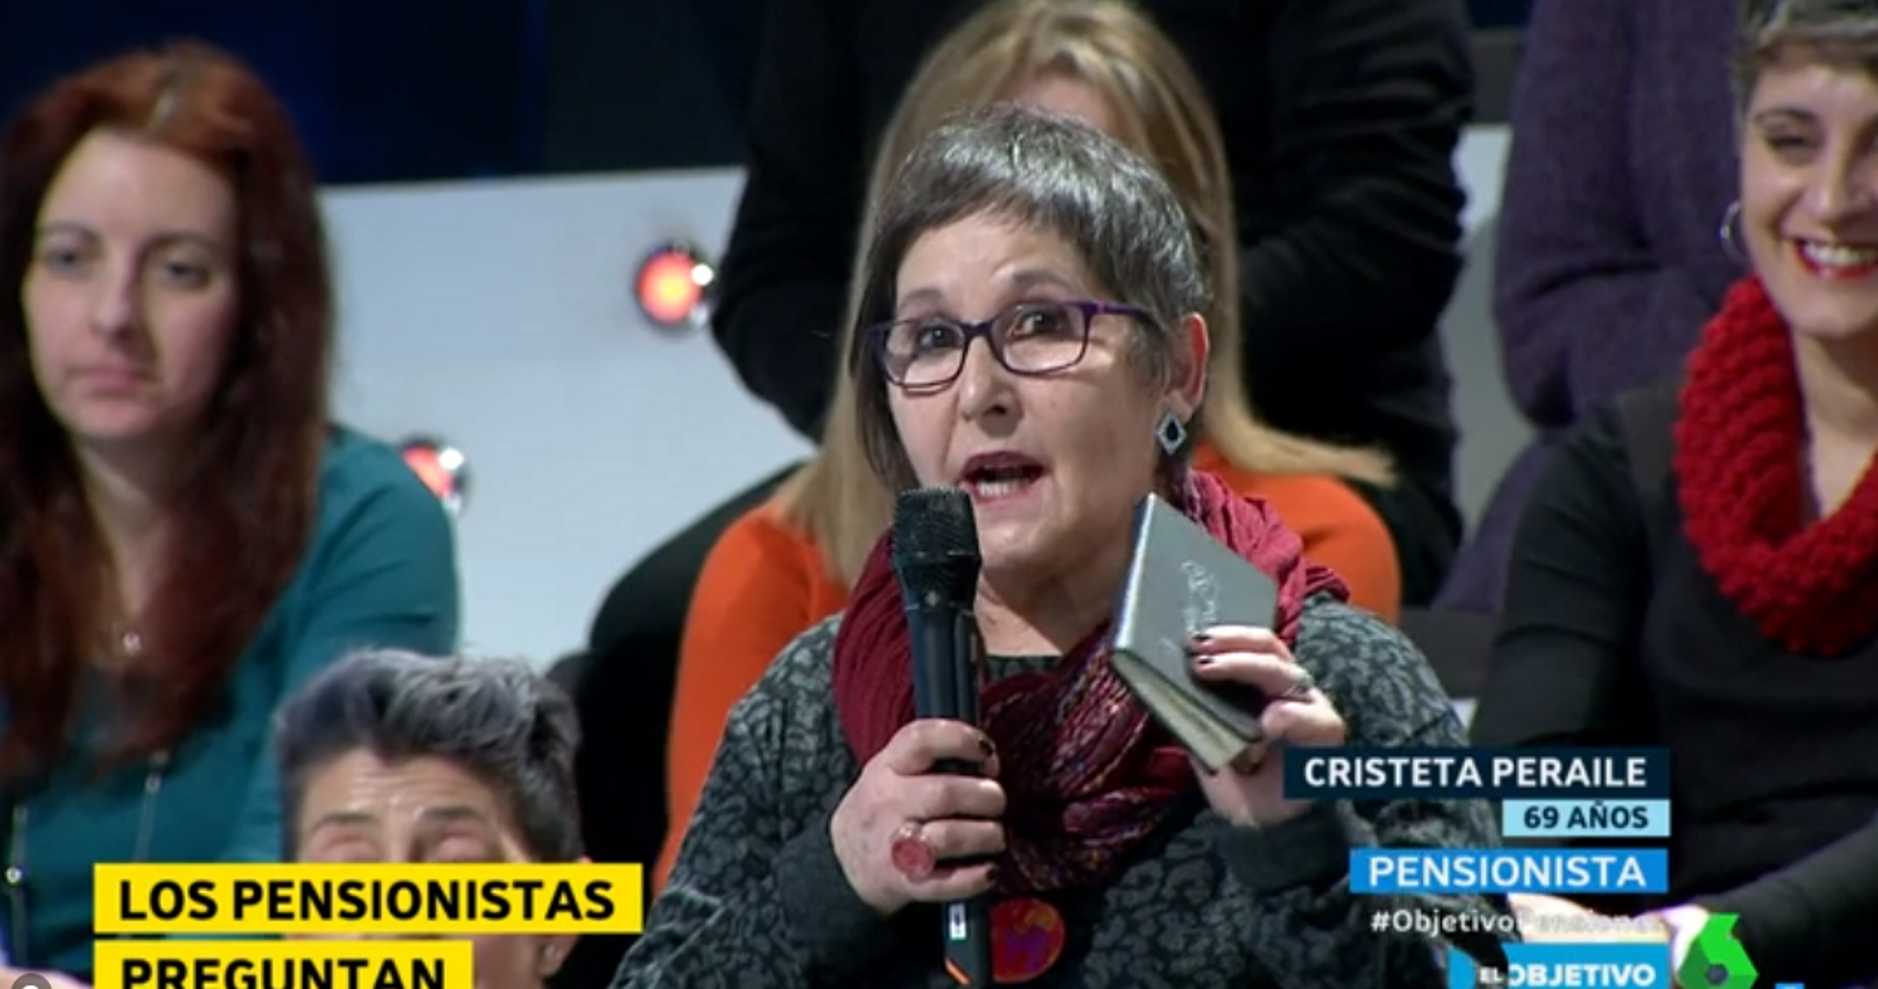 Un grup de pensionistes posa en evidència PP, PSOE i Ciutadans a La Sexta